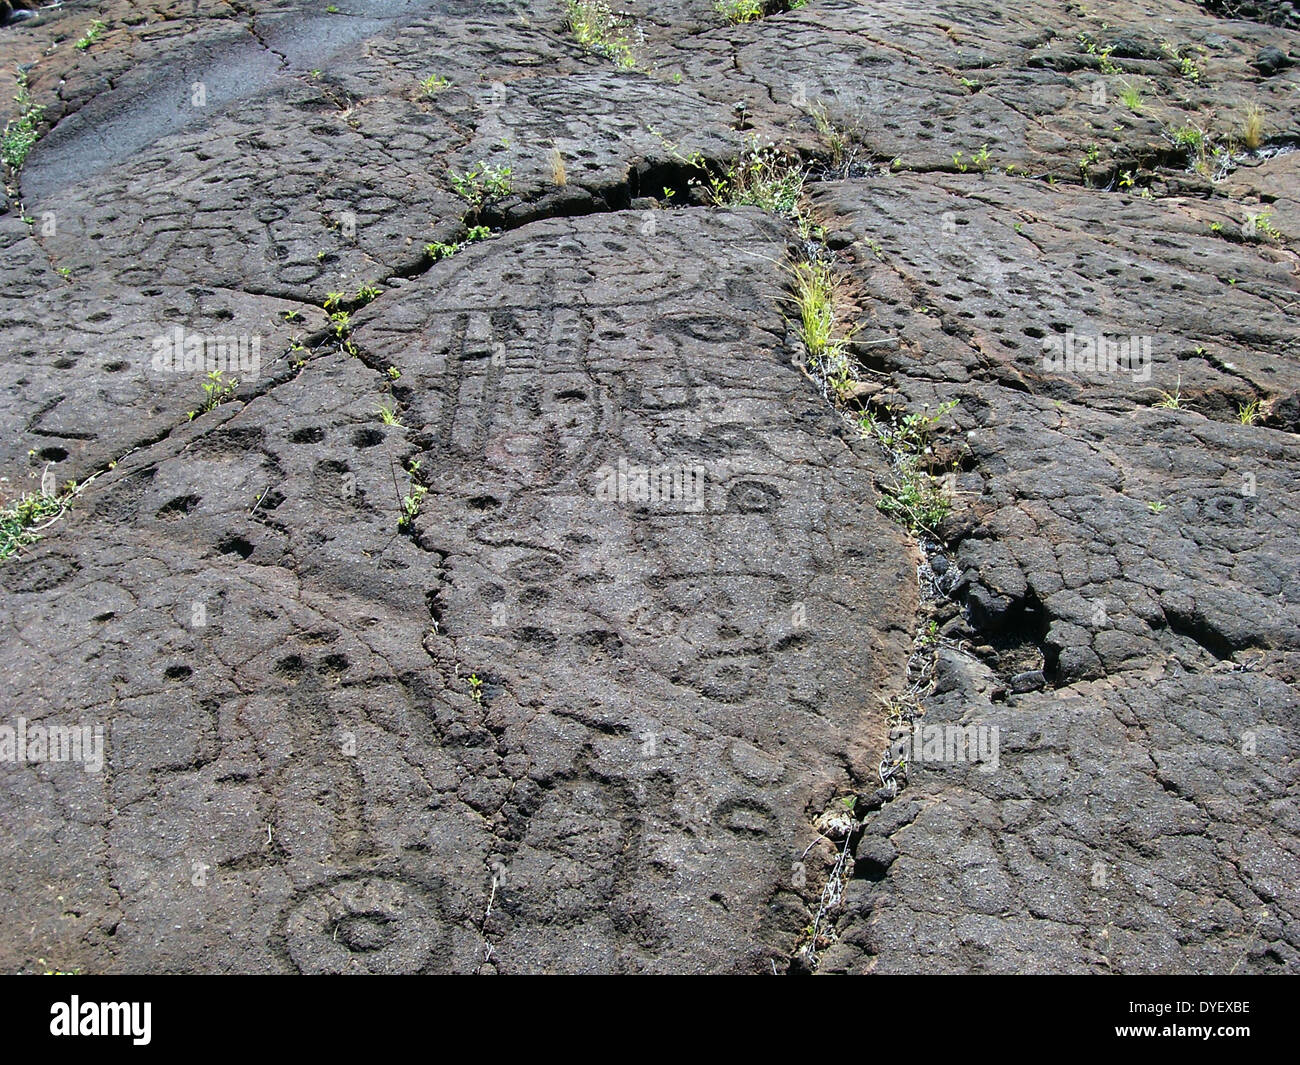 Arte rupestre. Petroglifi incisi nella larva rock, sulla Big Island delle Hawaii. Queste figure stilizzate sono alcune delle 3000 Puako incisioni rupestri su questa isola. Foto Stock